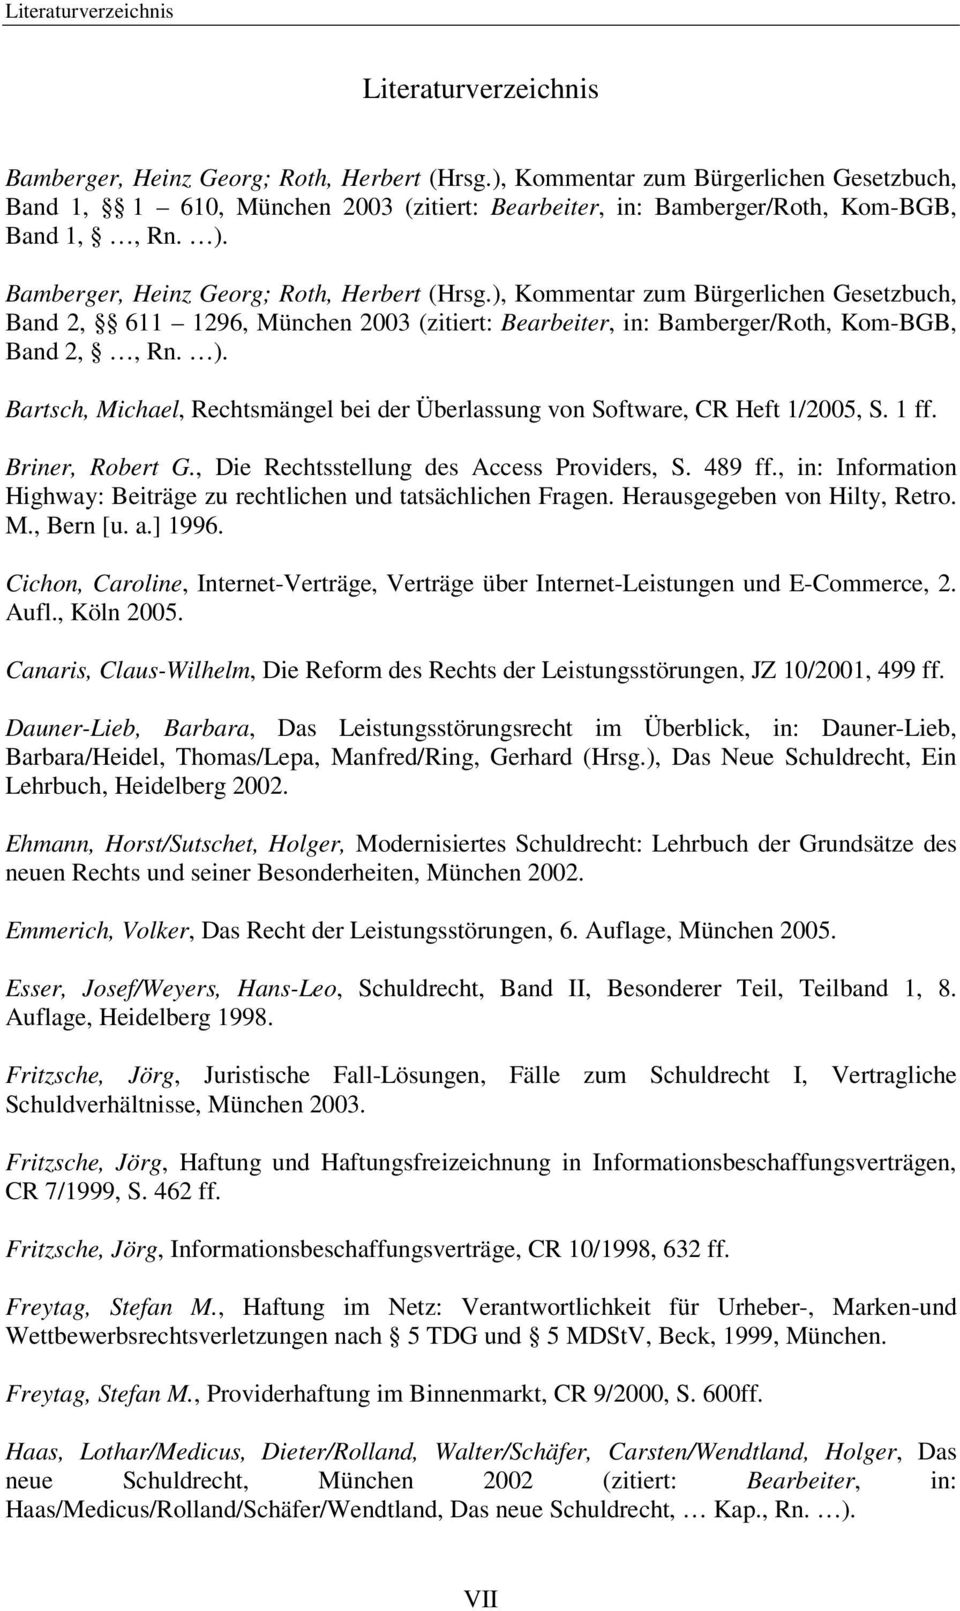 ), Kommentar zum Bürgerlichen Gesetzbuch, Band 2, 611 1296, München 2003 (zitiert: Bearbeiter, in: Bamberger/Roth, Kom-BGB, Band 2,, Rn. ).